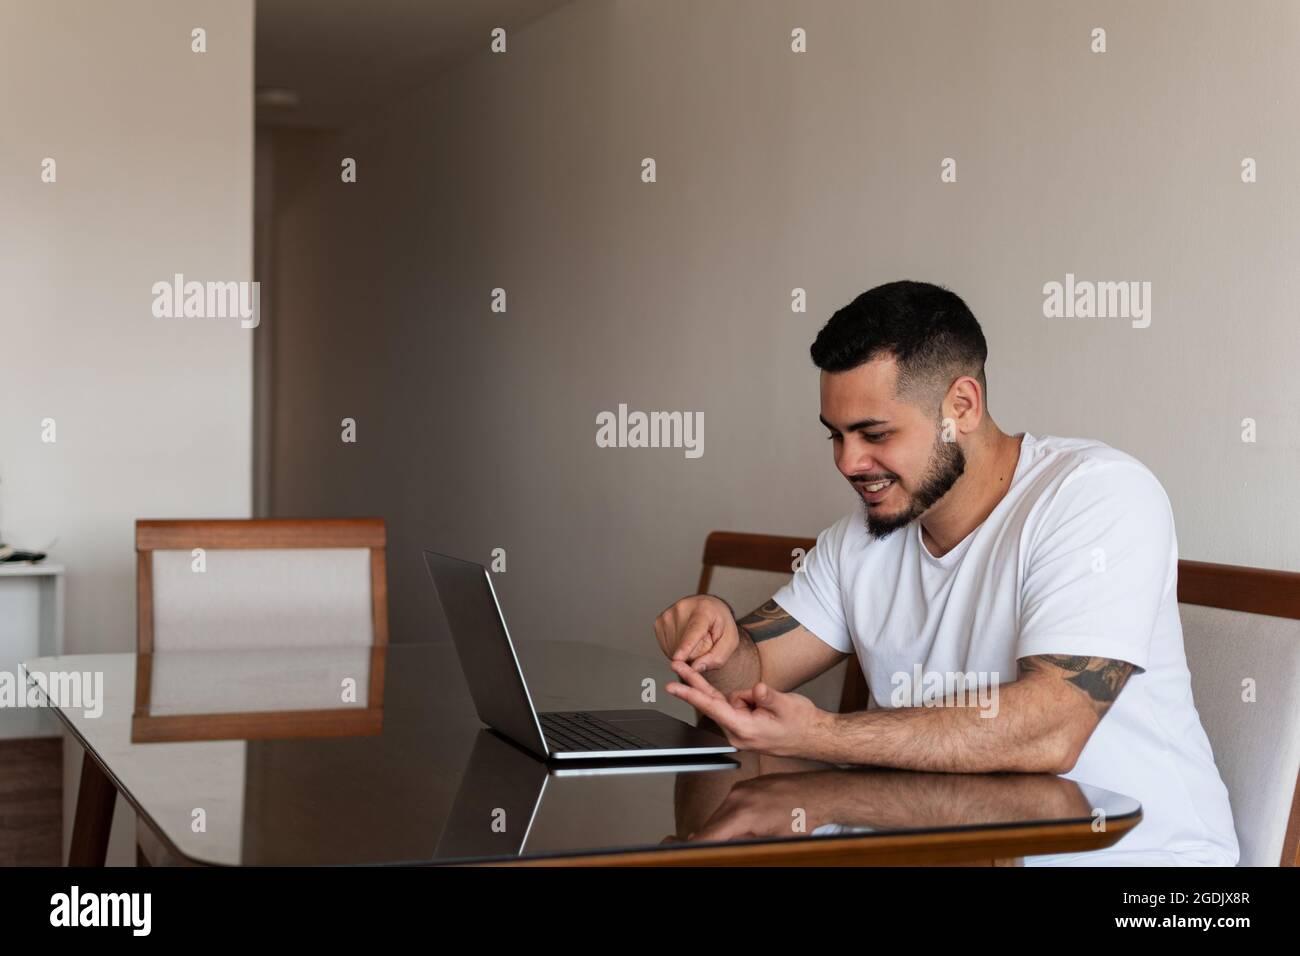 Jeune latin mec avec tatouages souriant et comptant sur ses doigts devant l'ordinateur portable Banque D'Images